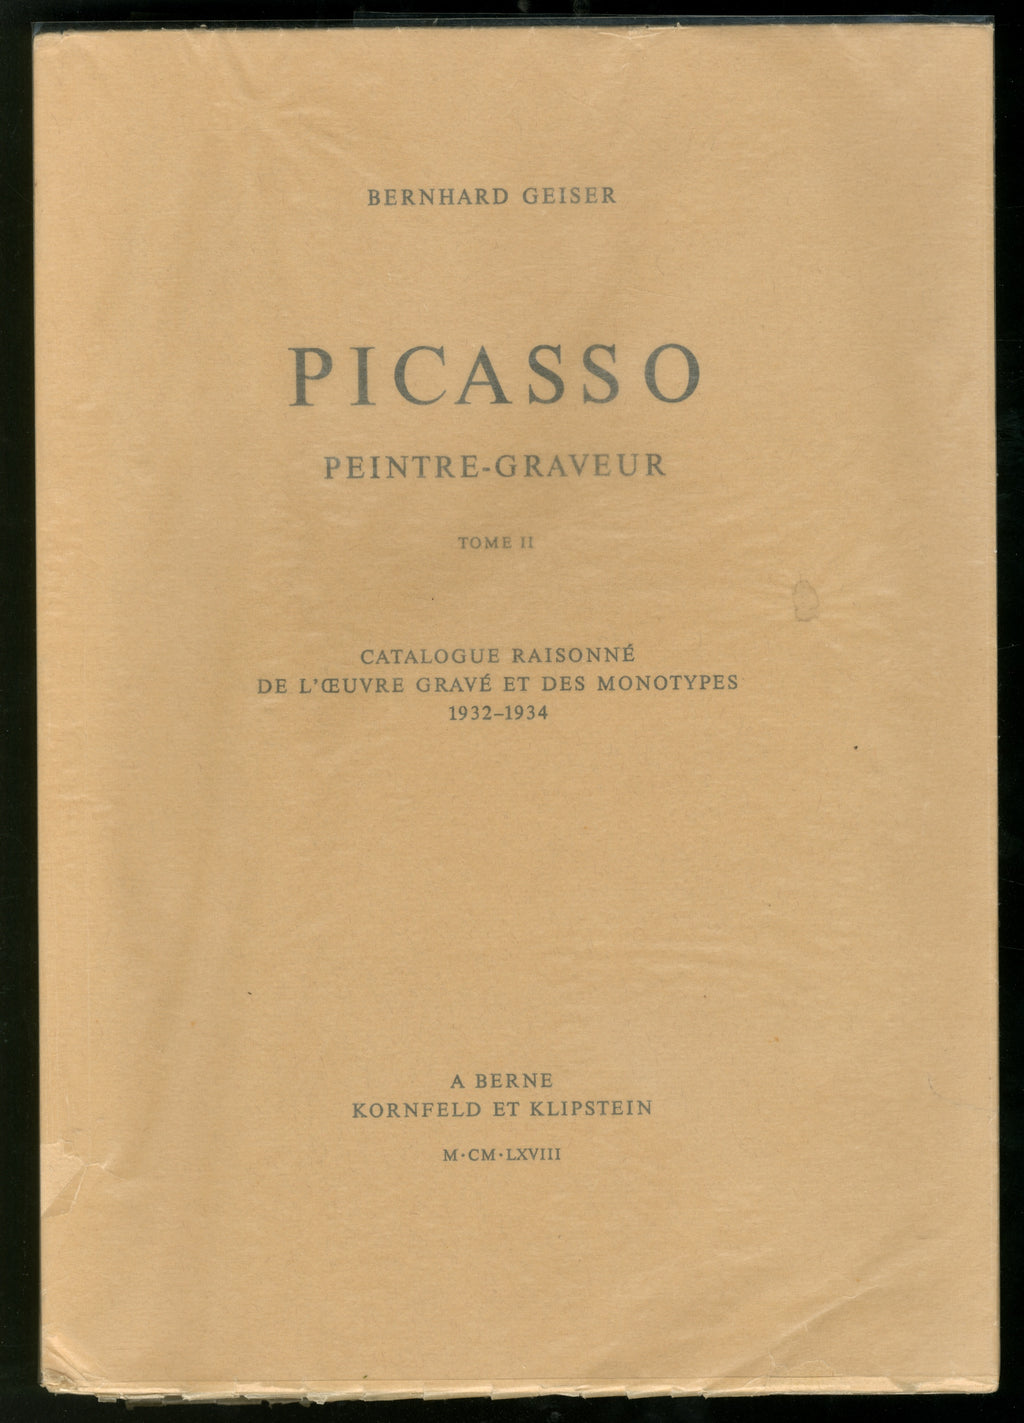 Picasso Peintre-Graveur (Catalogue Raisonne De L’Oevre Grave Et Des Monotypes 1932-1934) - A. Berne